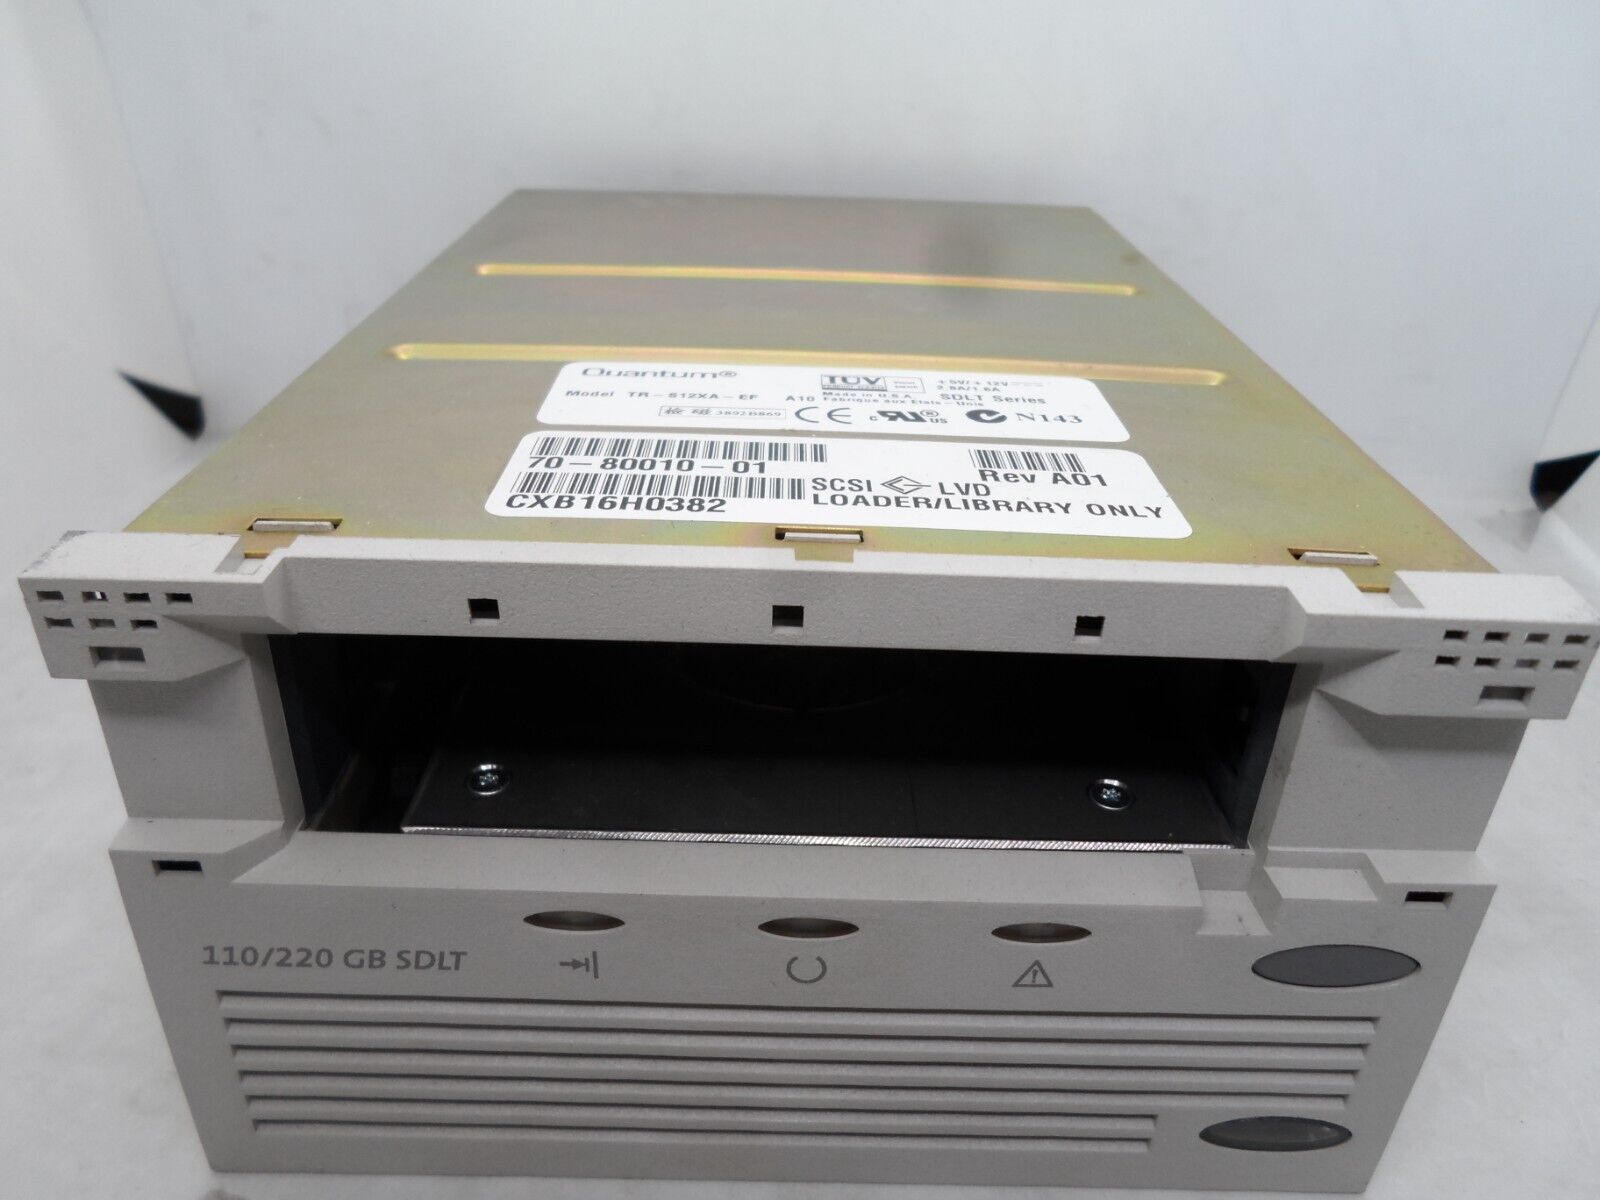 Overland NEO 110/220GB SDLT SCSI LVD Loader Bare drive 70-80010-01 TR-S12XA-EF